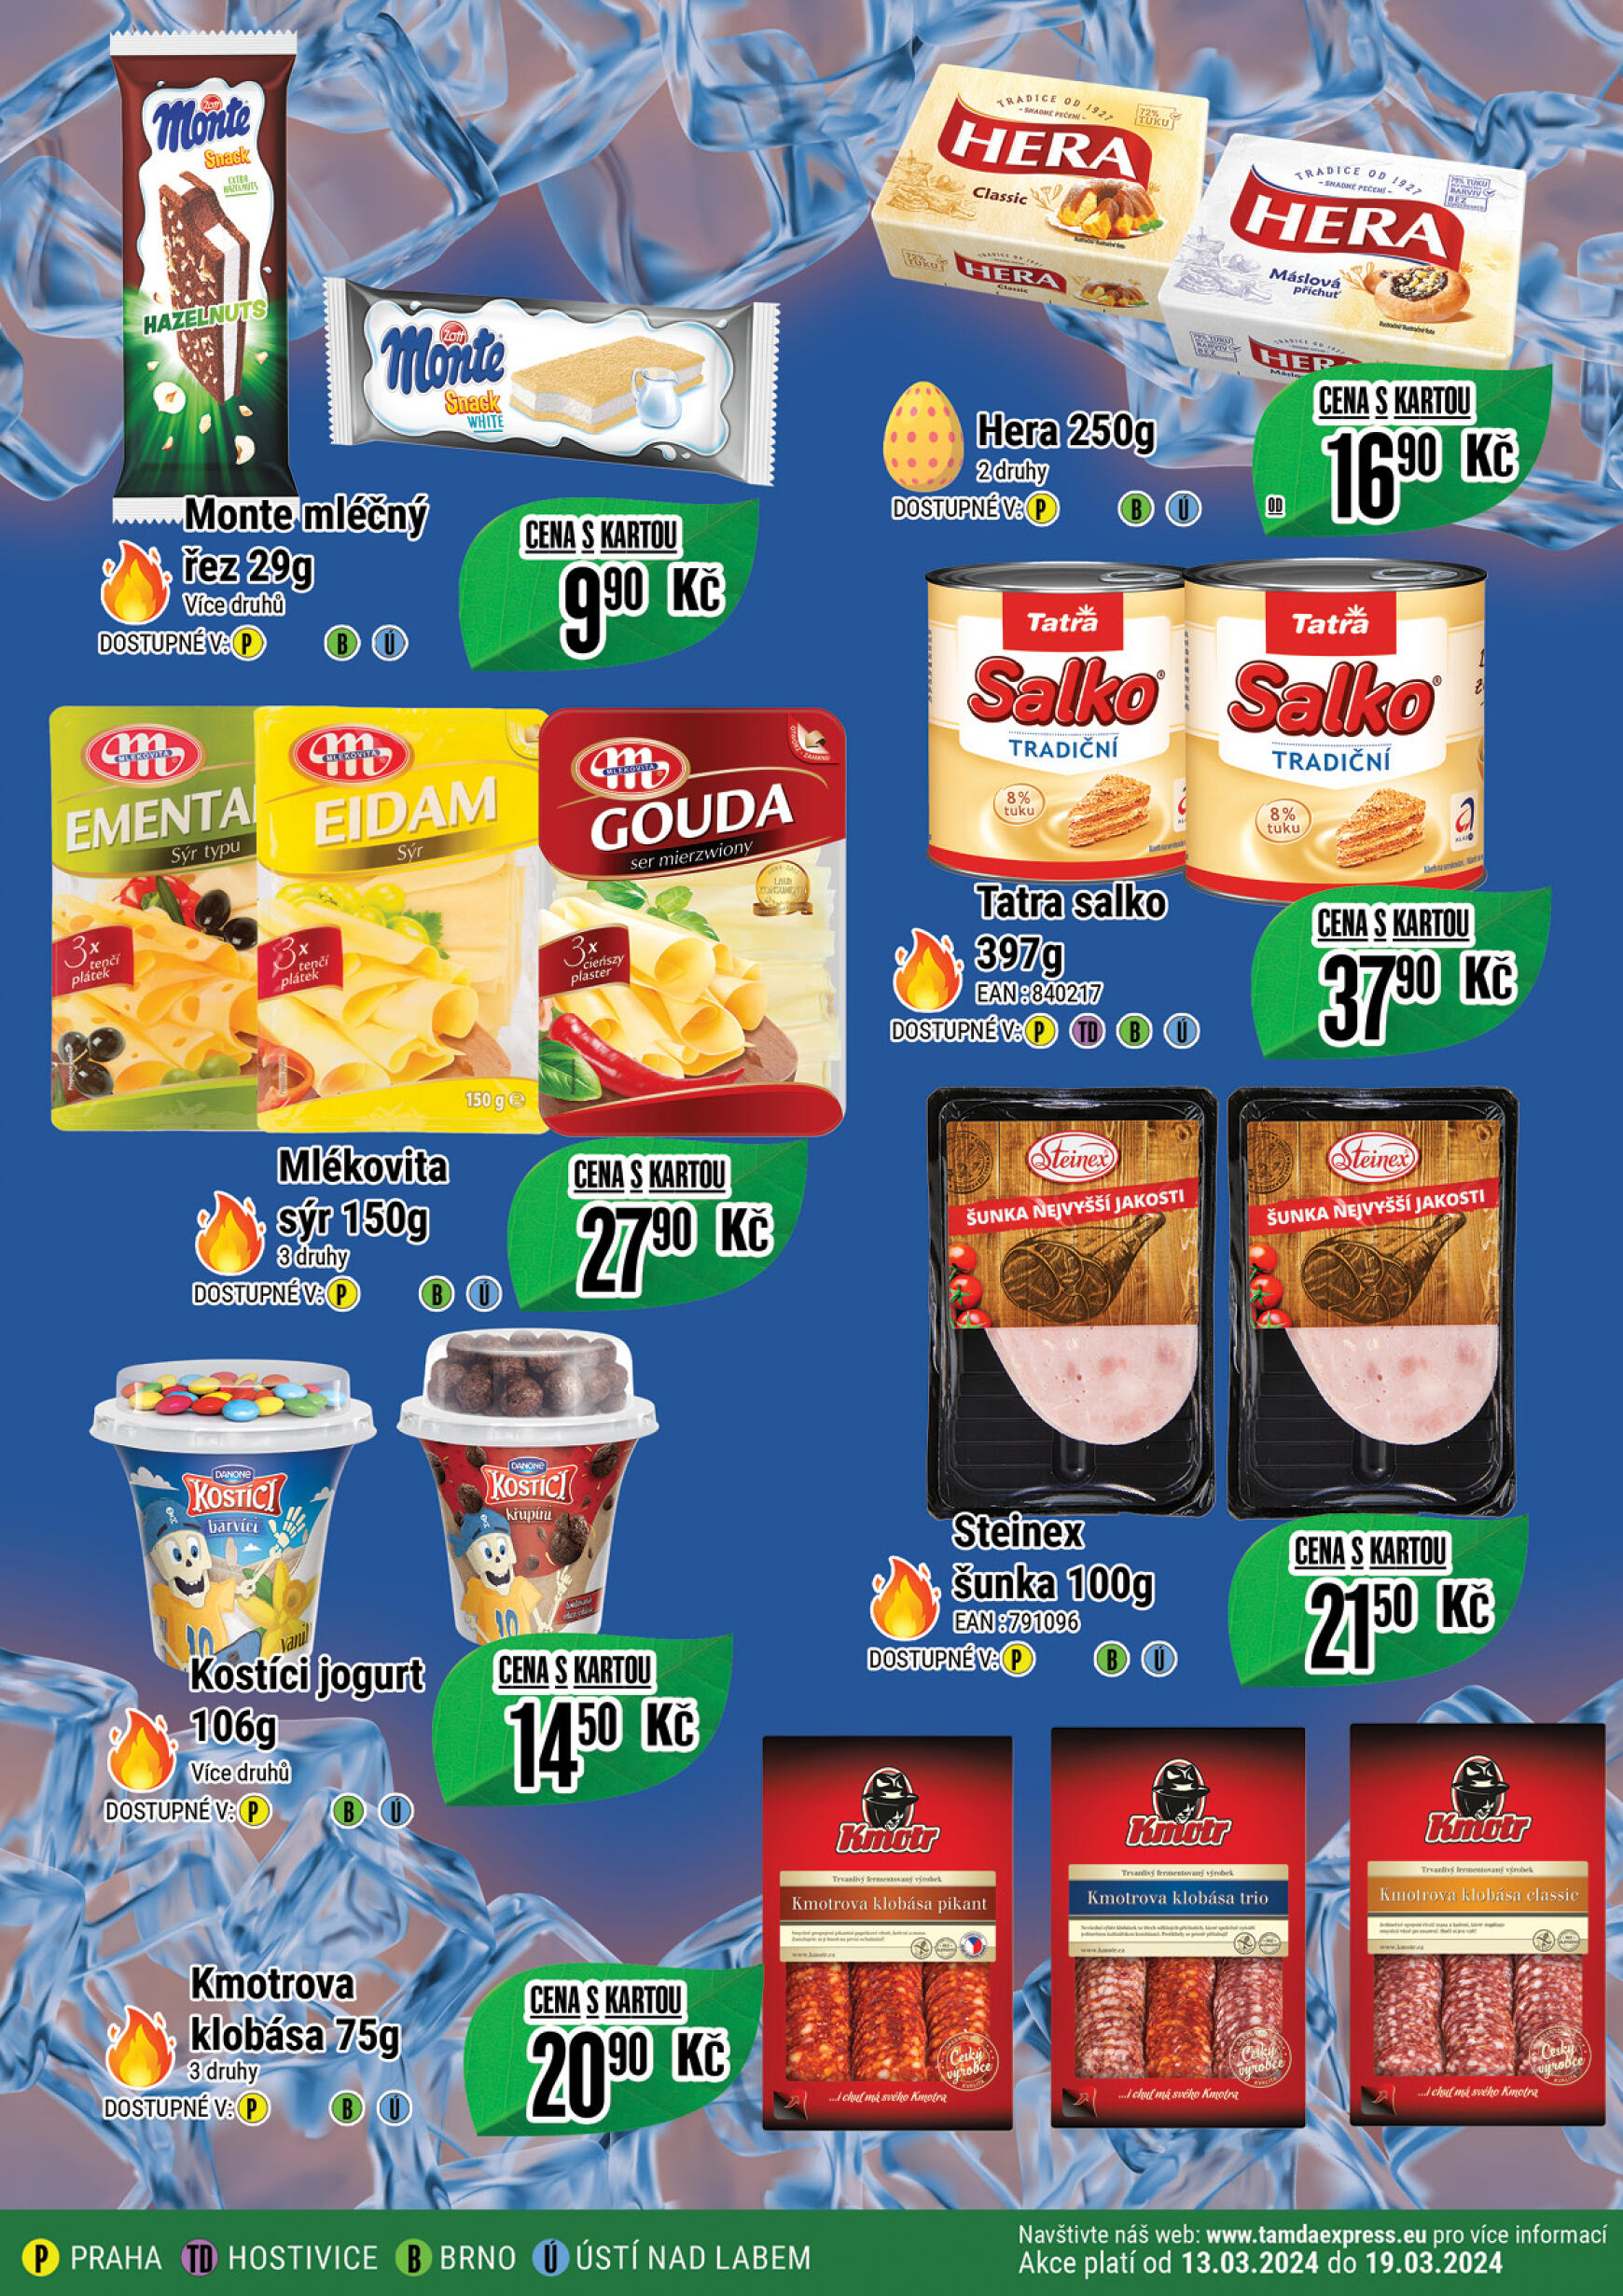 tamda-foods - Tamda Foods platný od 13.03.2024 - page: 46